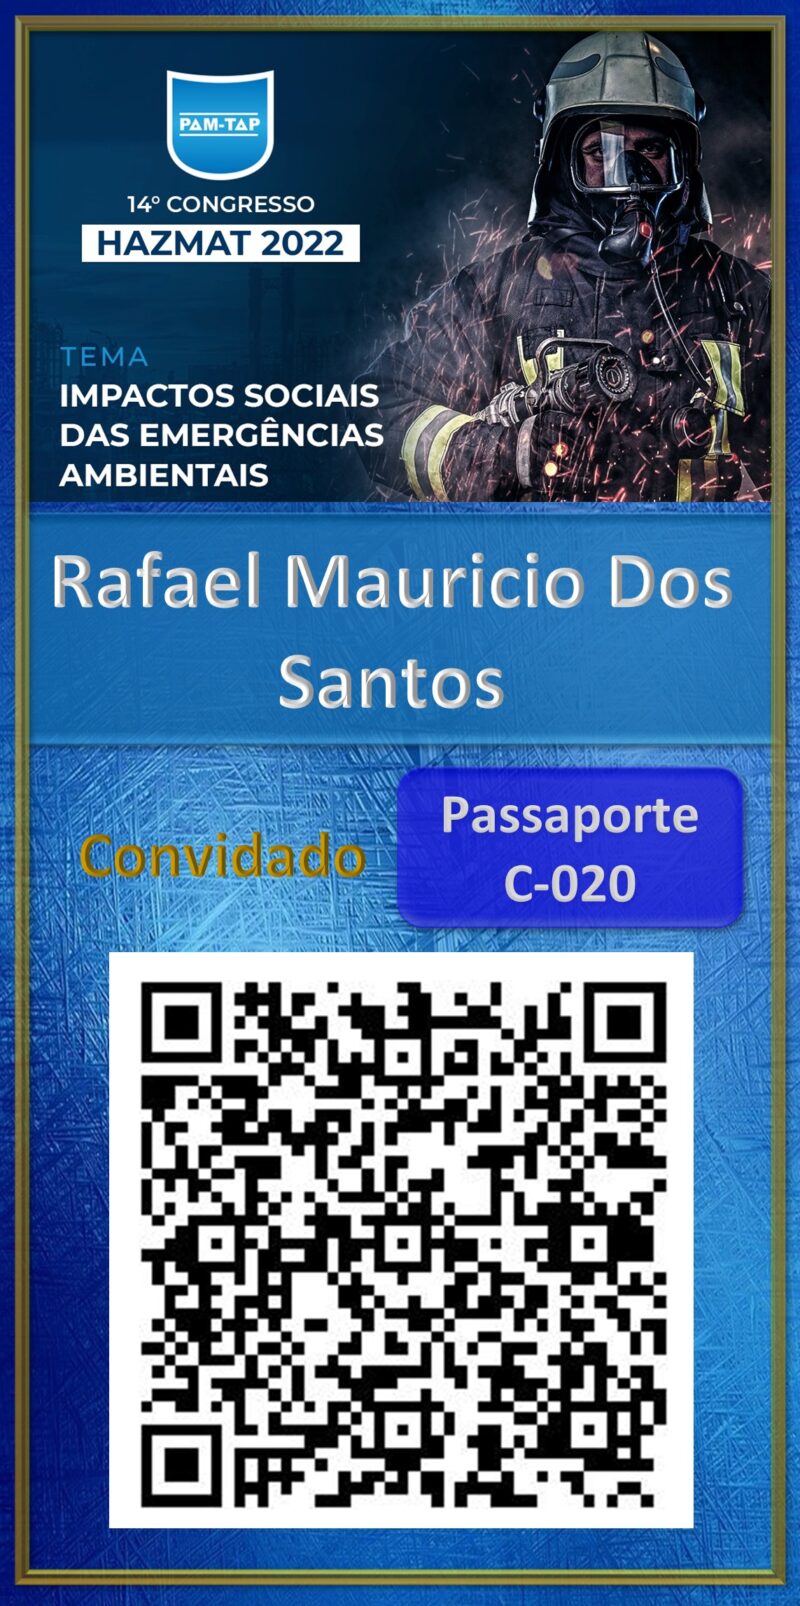 Rafael Mauricio Dos Santos-Hazmat 2022-Empresa